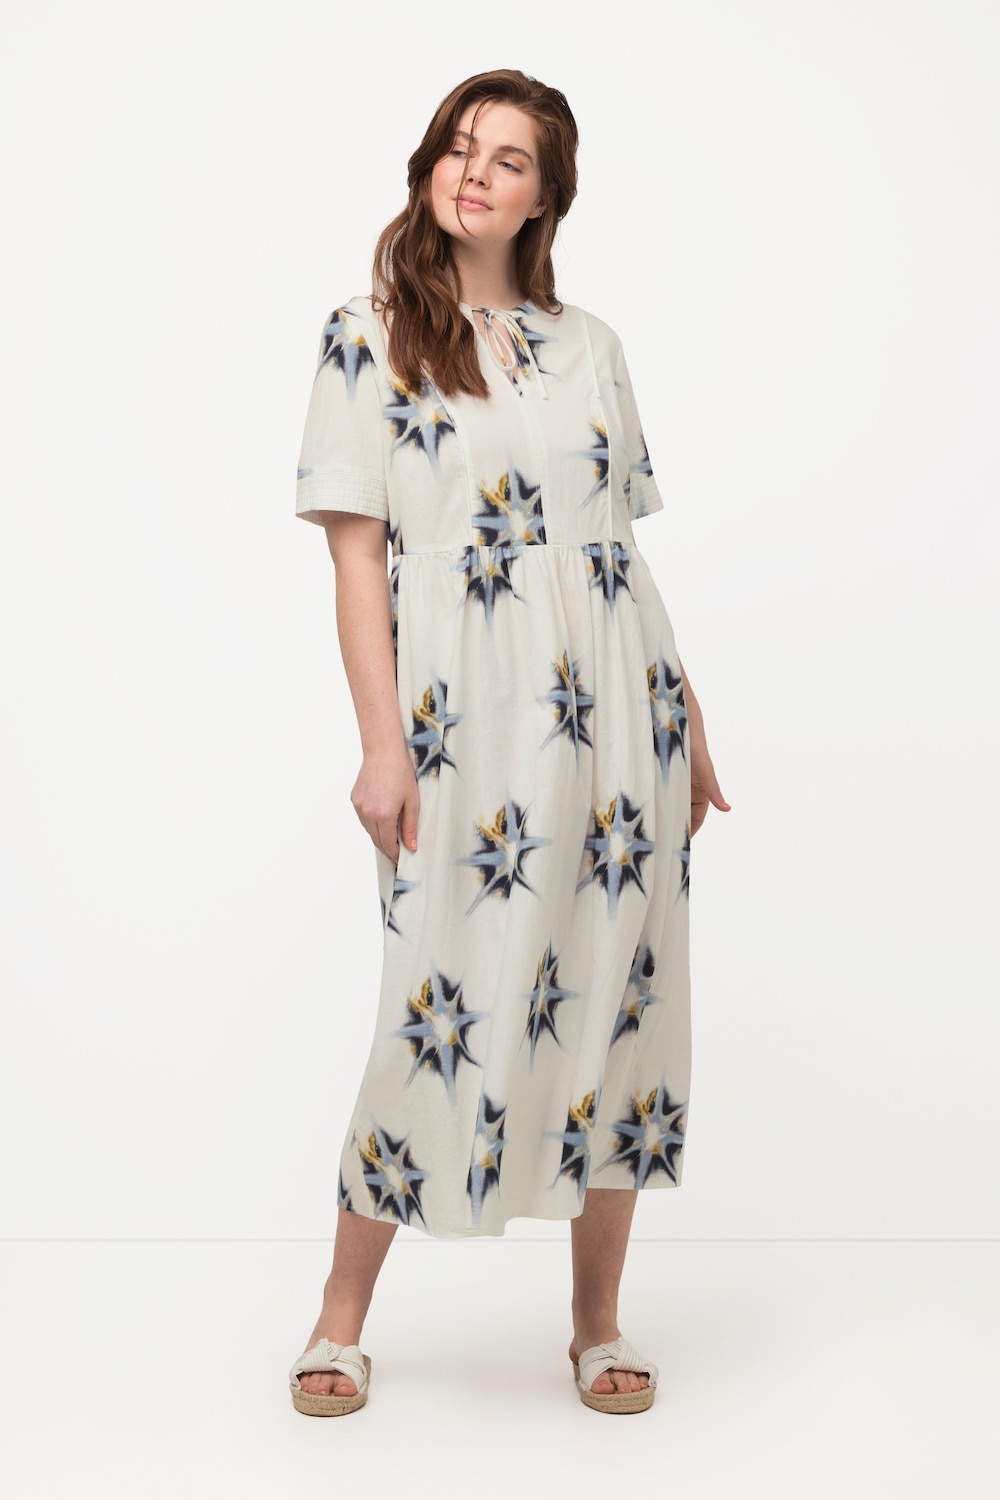 Plus Size Eco Cotton Starburst Print Tie Neck Dress, Woman, white, size: 16/18, cotton, Ulla Popken